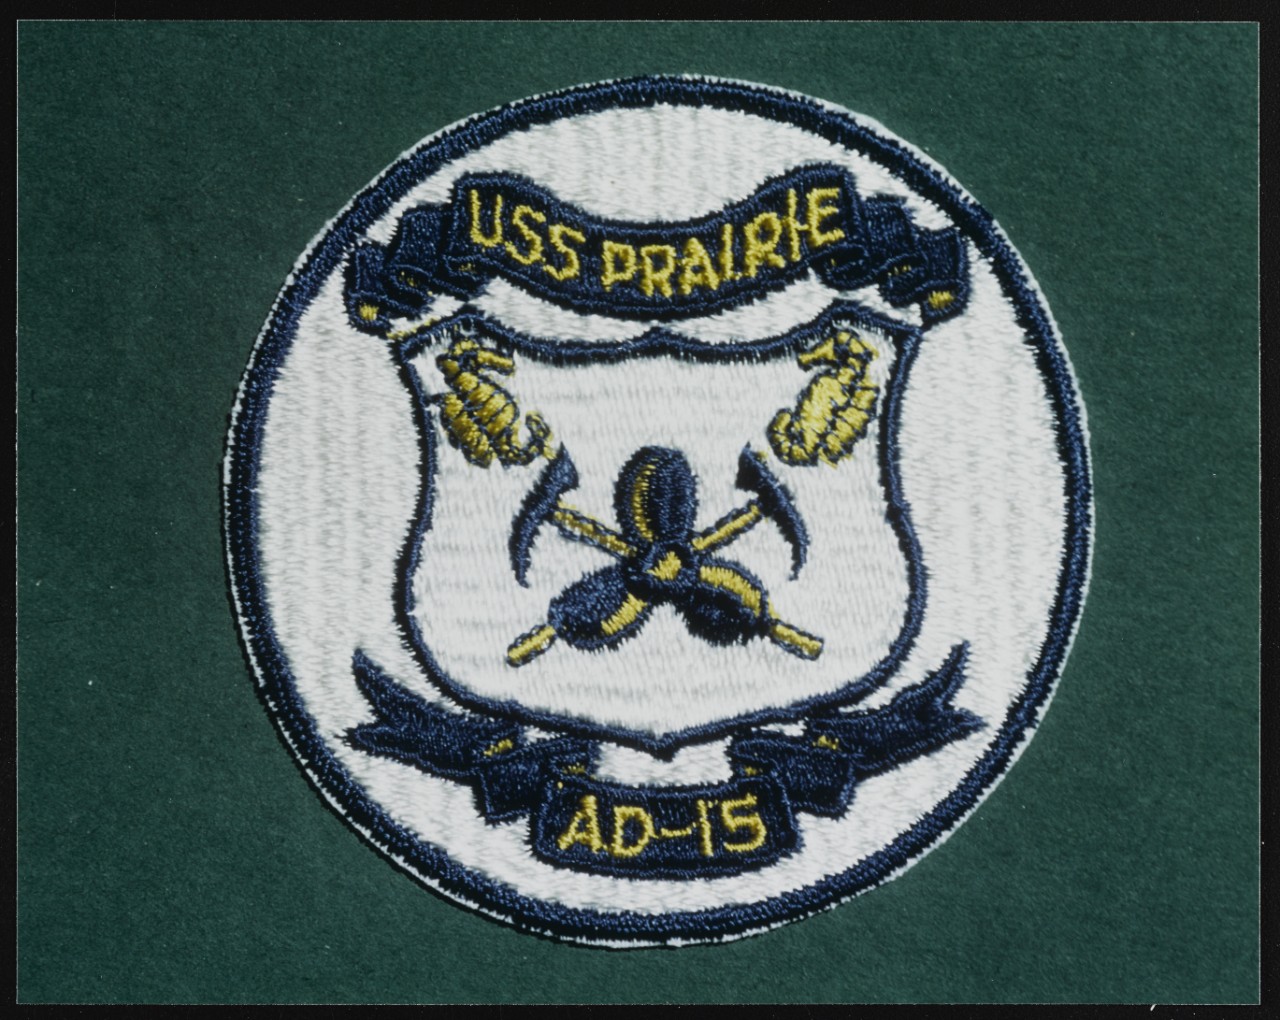 Insignia:  USS PRAIRIE (AD-15)